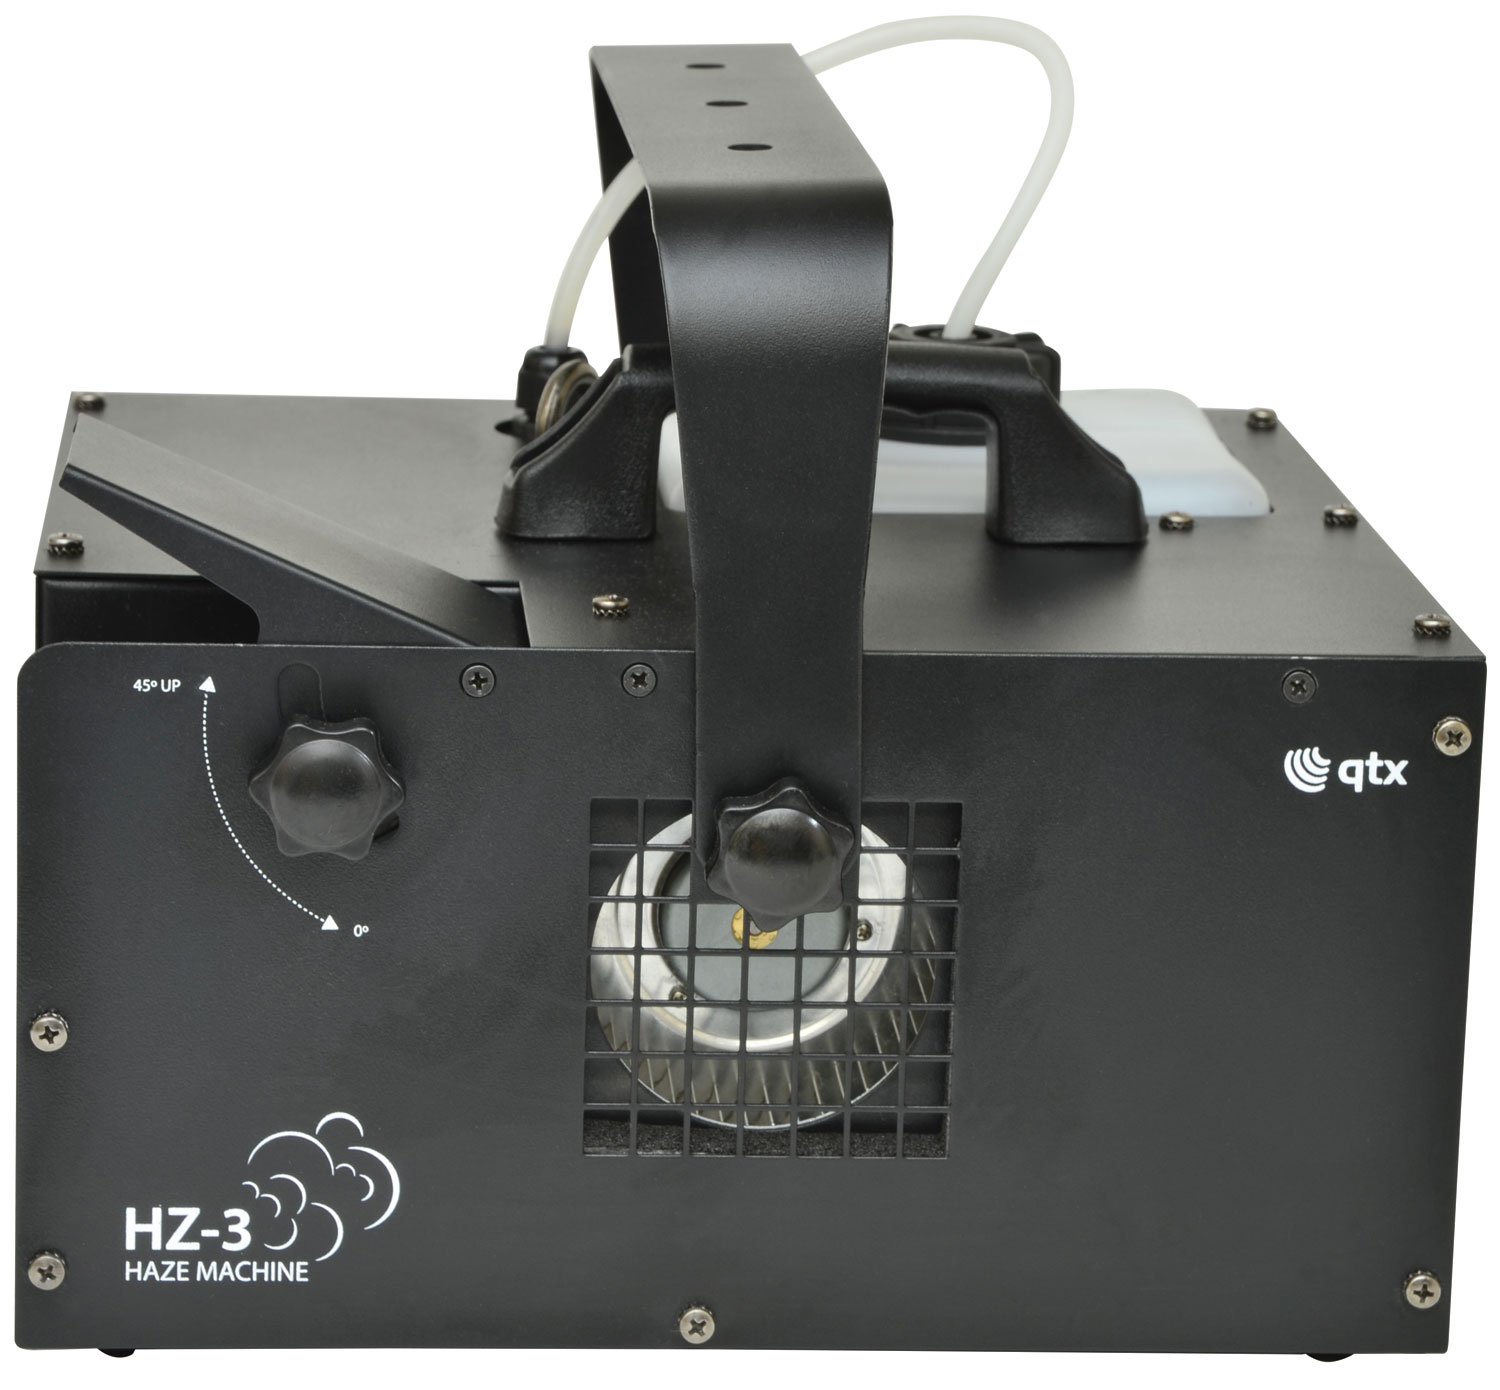 QTZ HZ-3  Haze machine